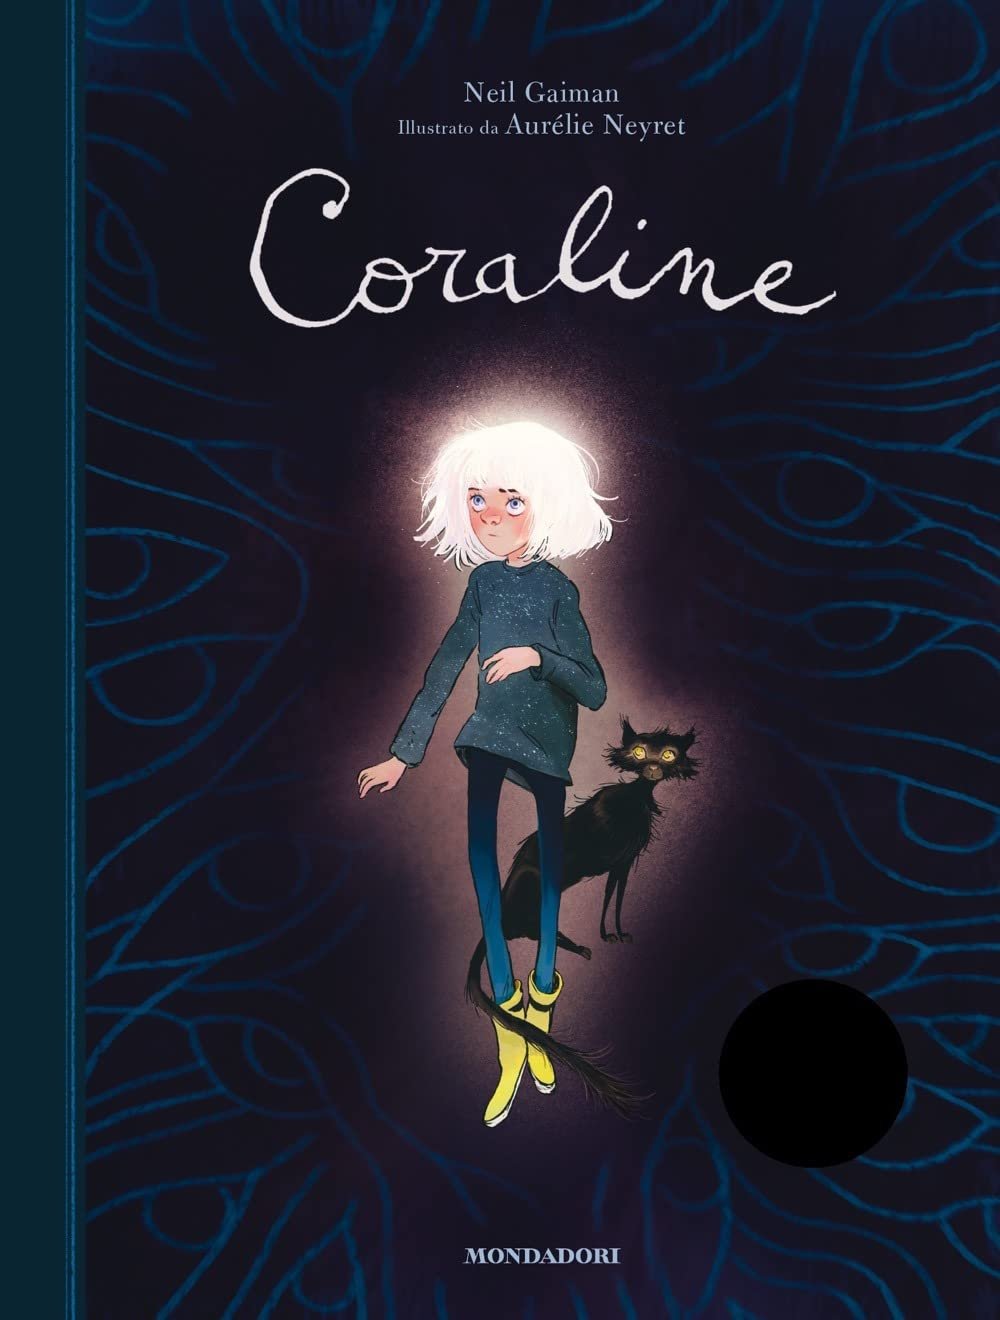 Neil Galman – Coraline (Mondadori, Milano 2022)